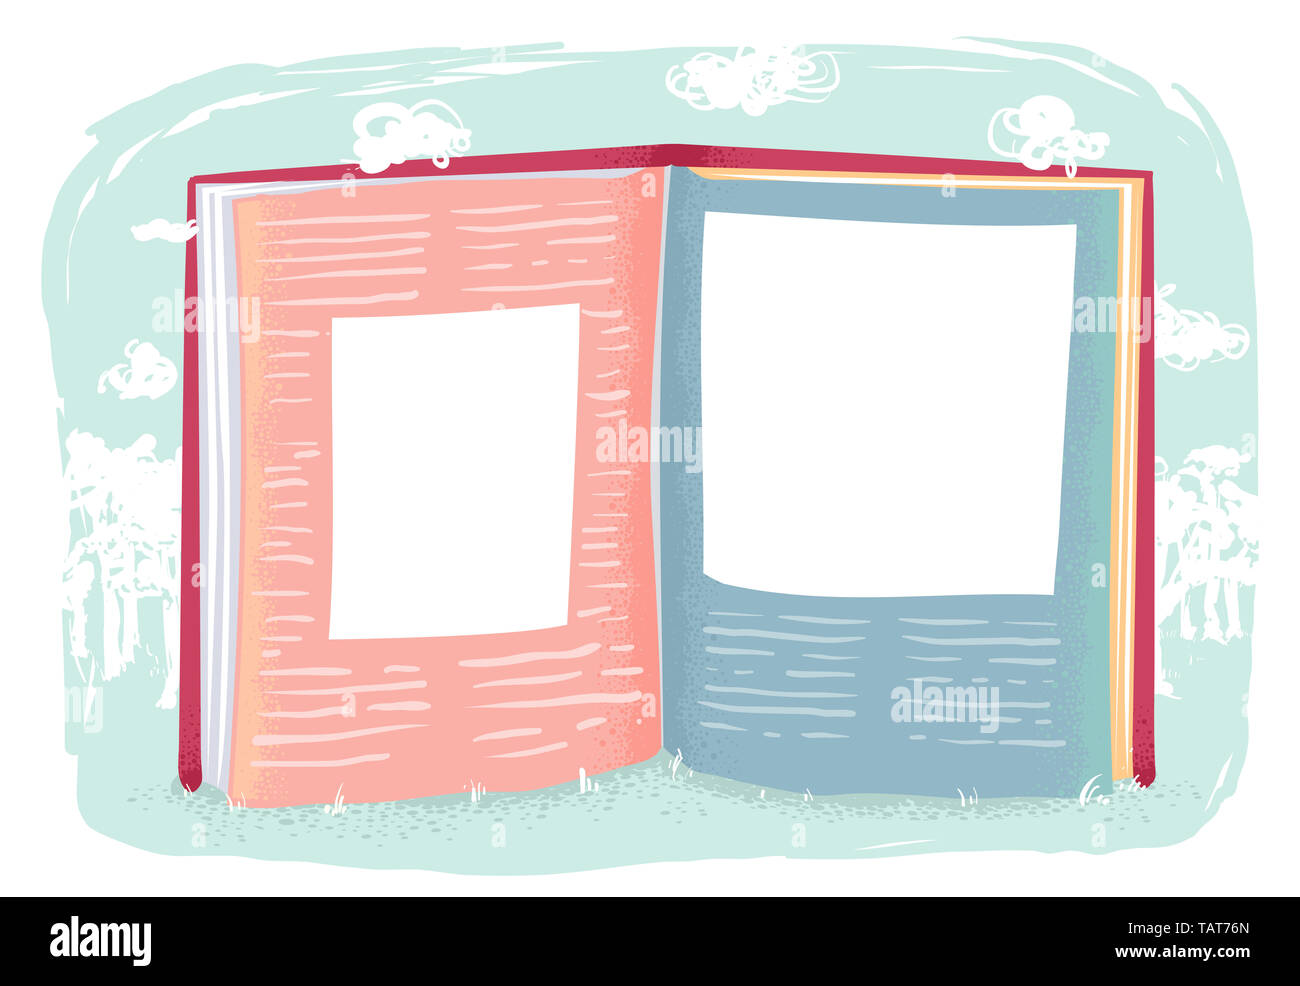 Abbildung: ein offenes Buch mit leeren Speicherplatz für Bilder Stockfoto